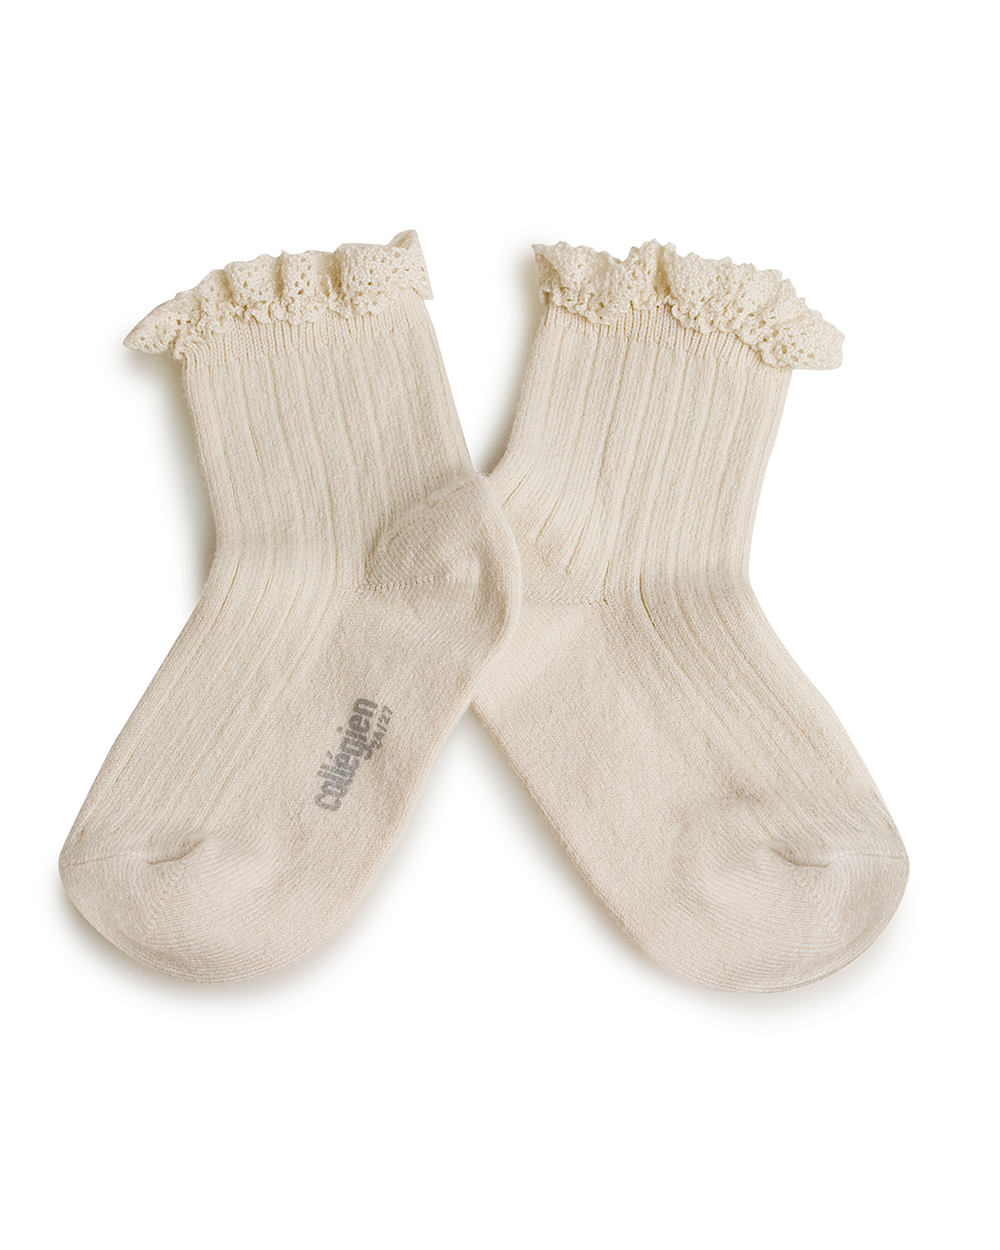 [Collégien] Lili - Lace Trim Ribbed Ankle Socks - Doux Agneaux [32-35]